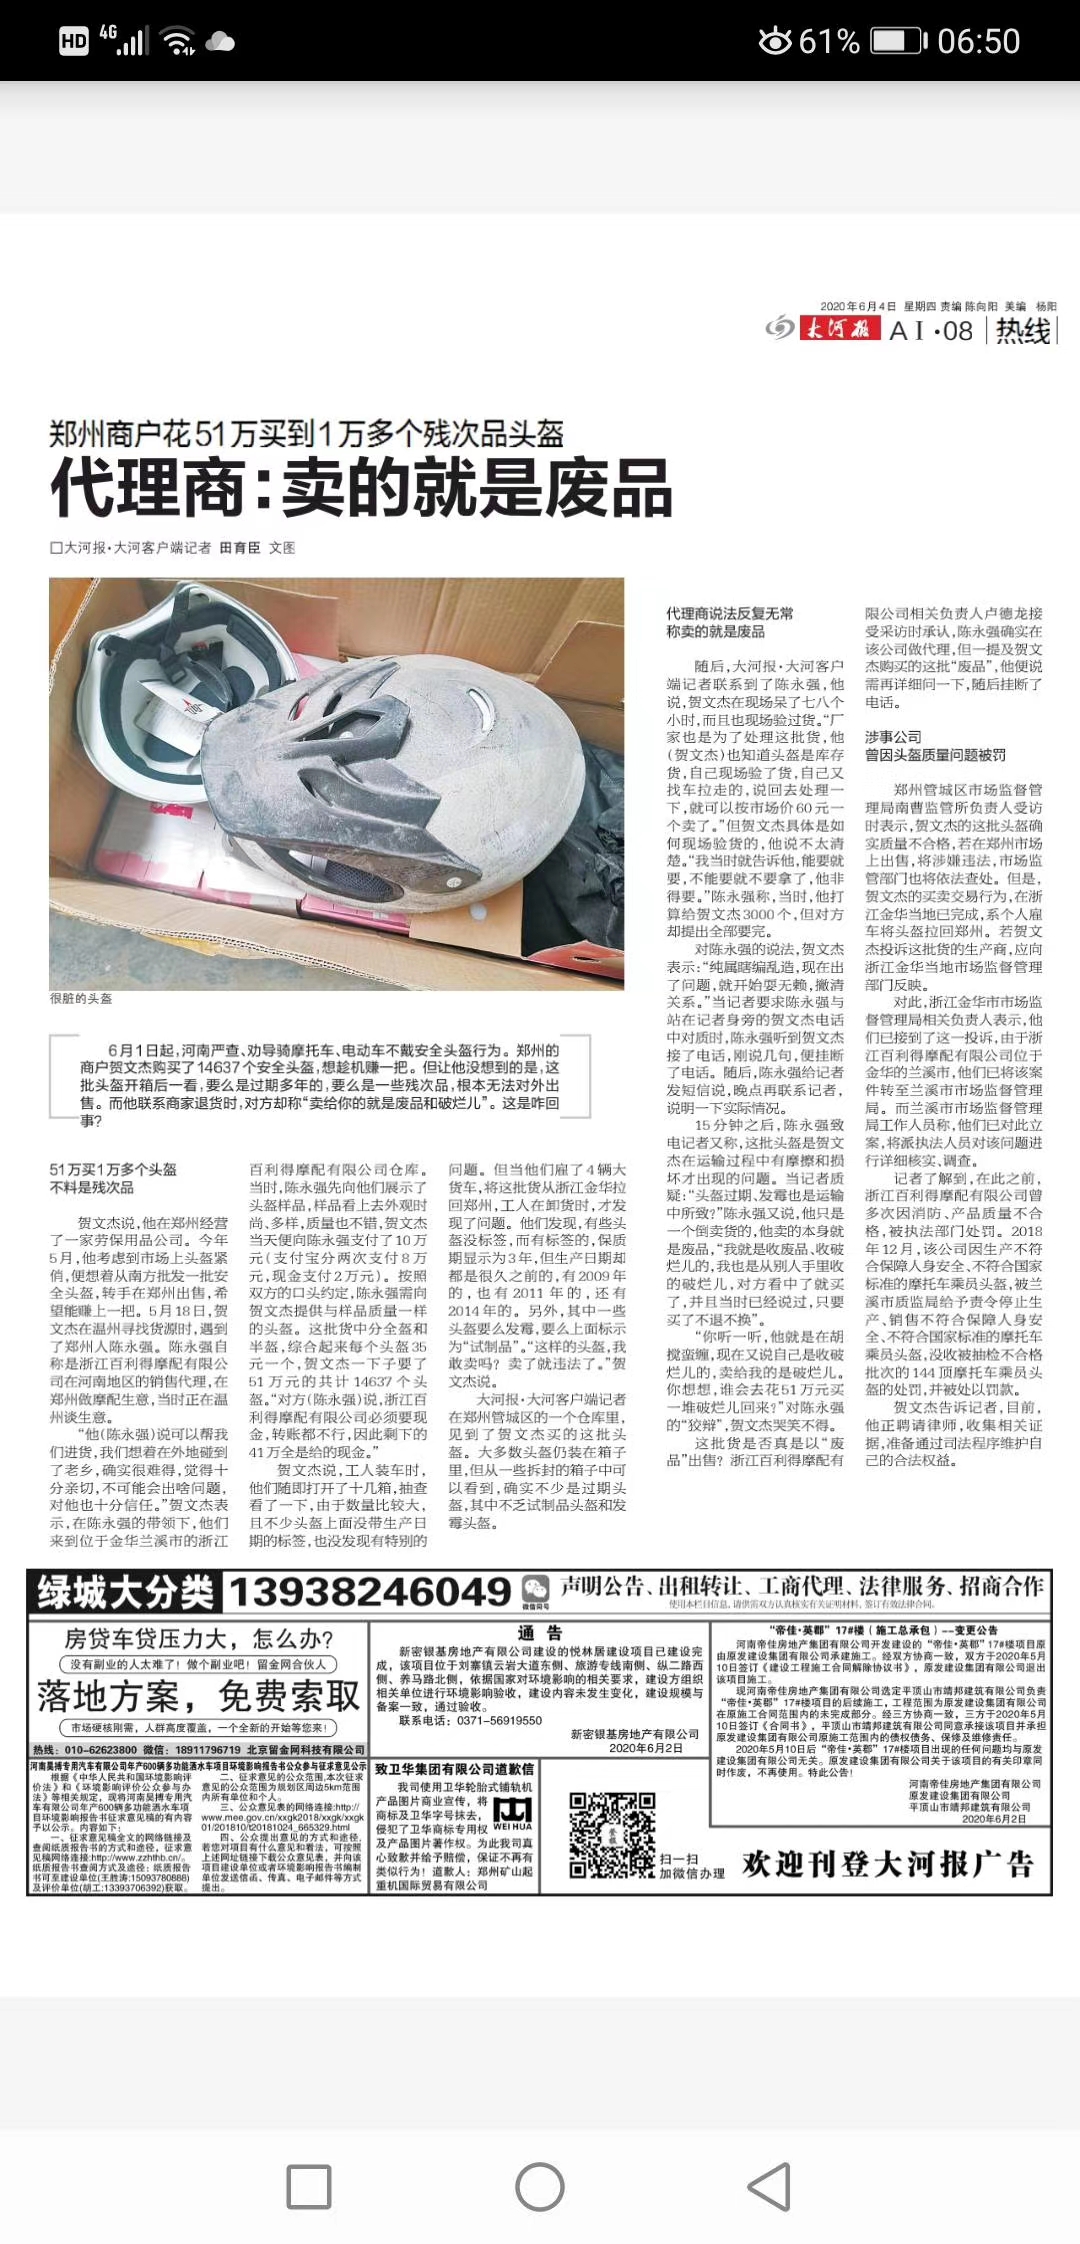 花51万买回1万多个残次头盔，郑州一市民将“居间人”和头盔公司起诉至法院